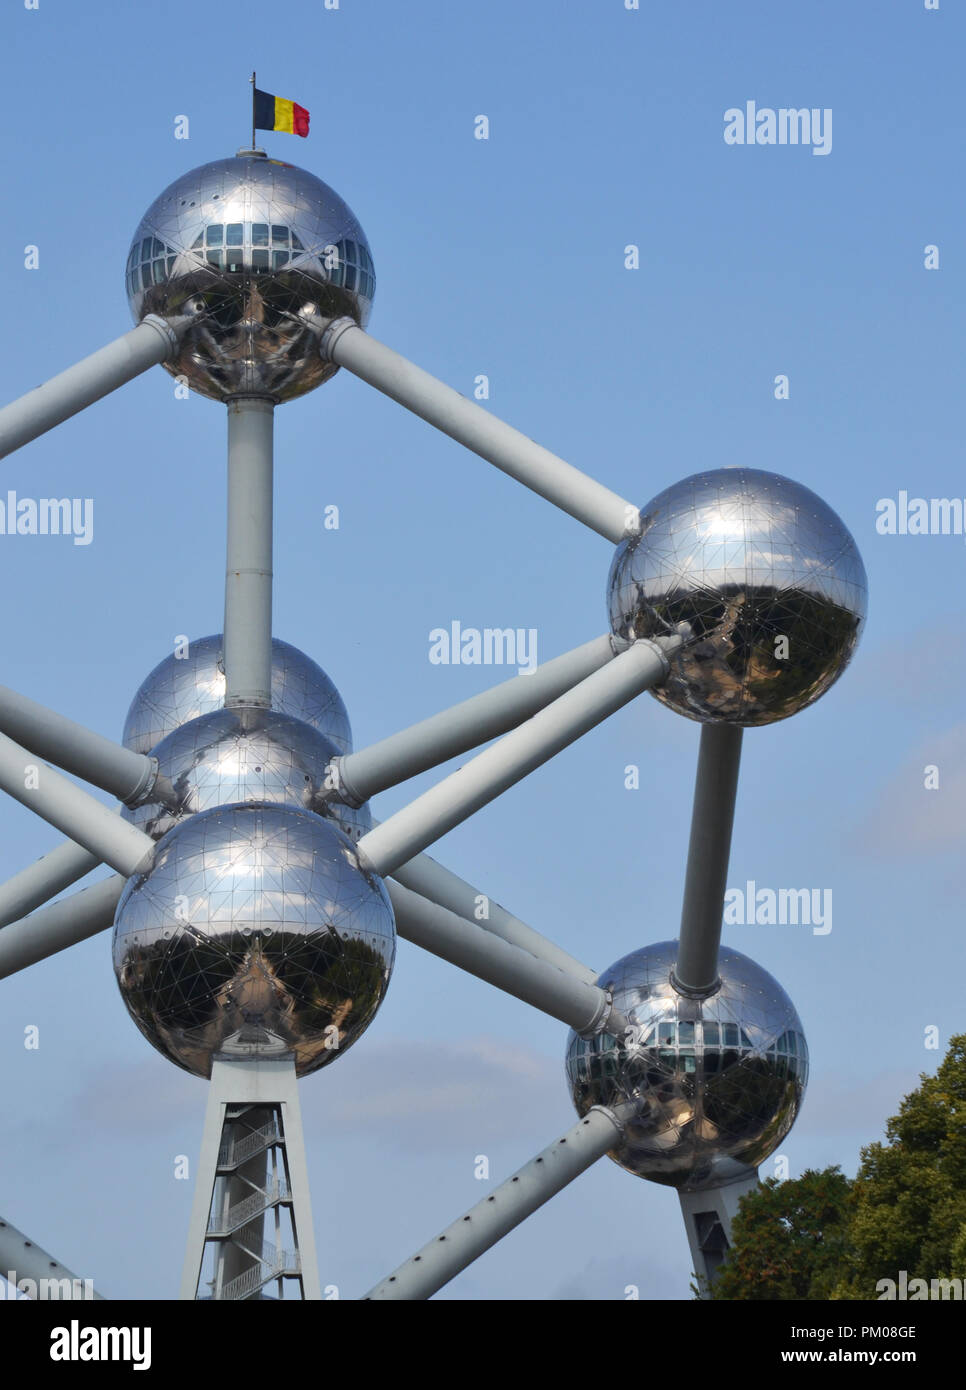 Bruxelles, Belgique - 19 août 2018 : Atomium bâtiment construit pour Expo 58, l'Exposition Universelle de Bruxelles de 1958, à Bruxelles, Belgique. Banque D'Images